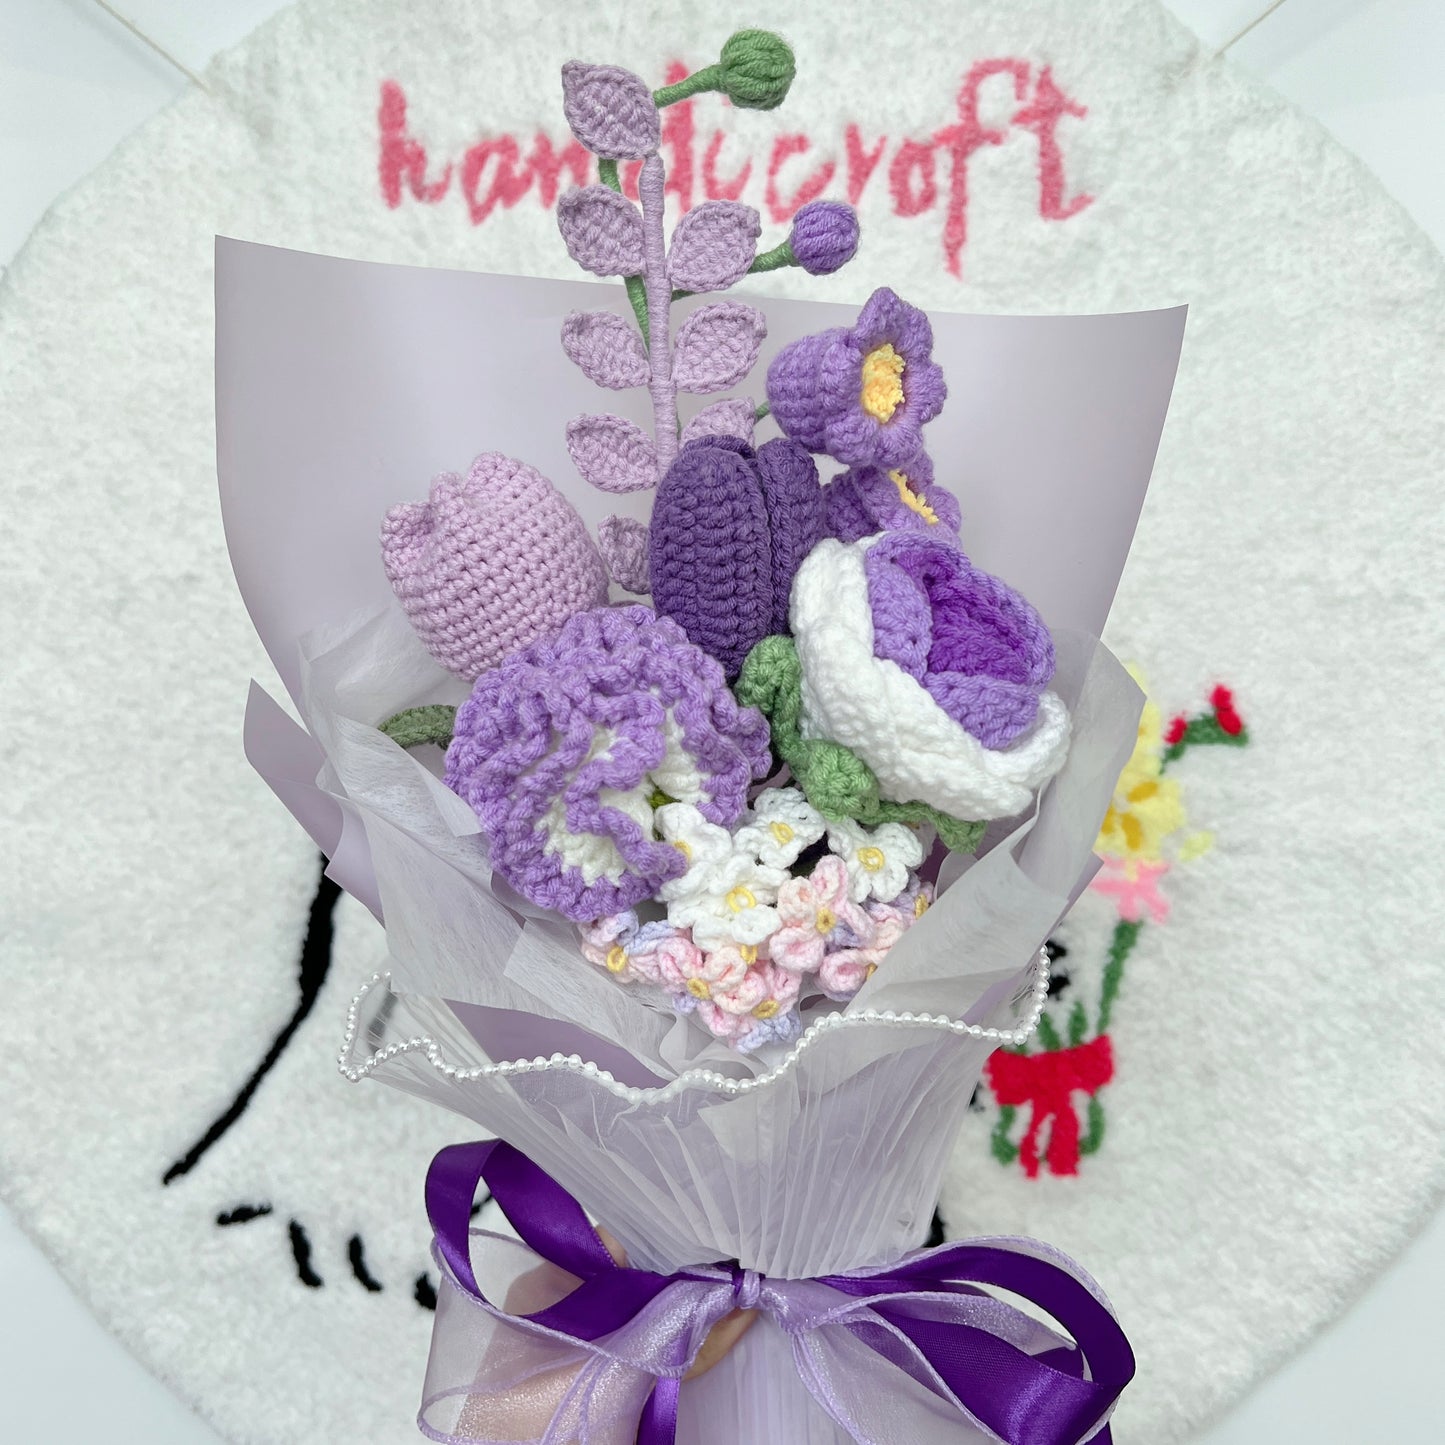 grape glow - purple crochet flower bouquet ₊˚ʚ ᗢ₊˚✧ ﾟ.🍇